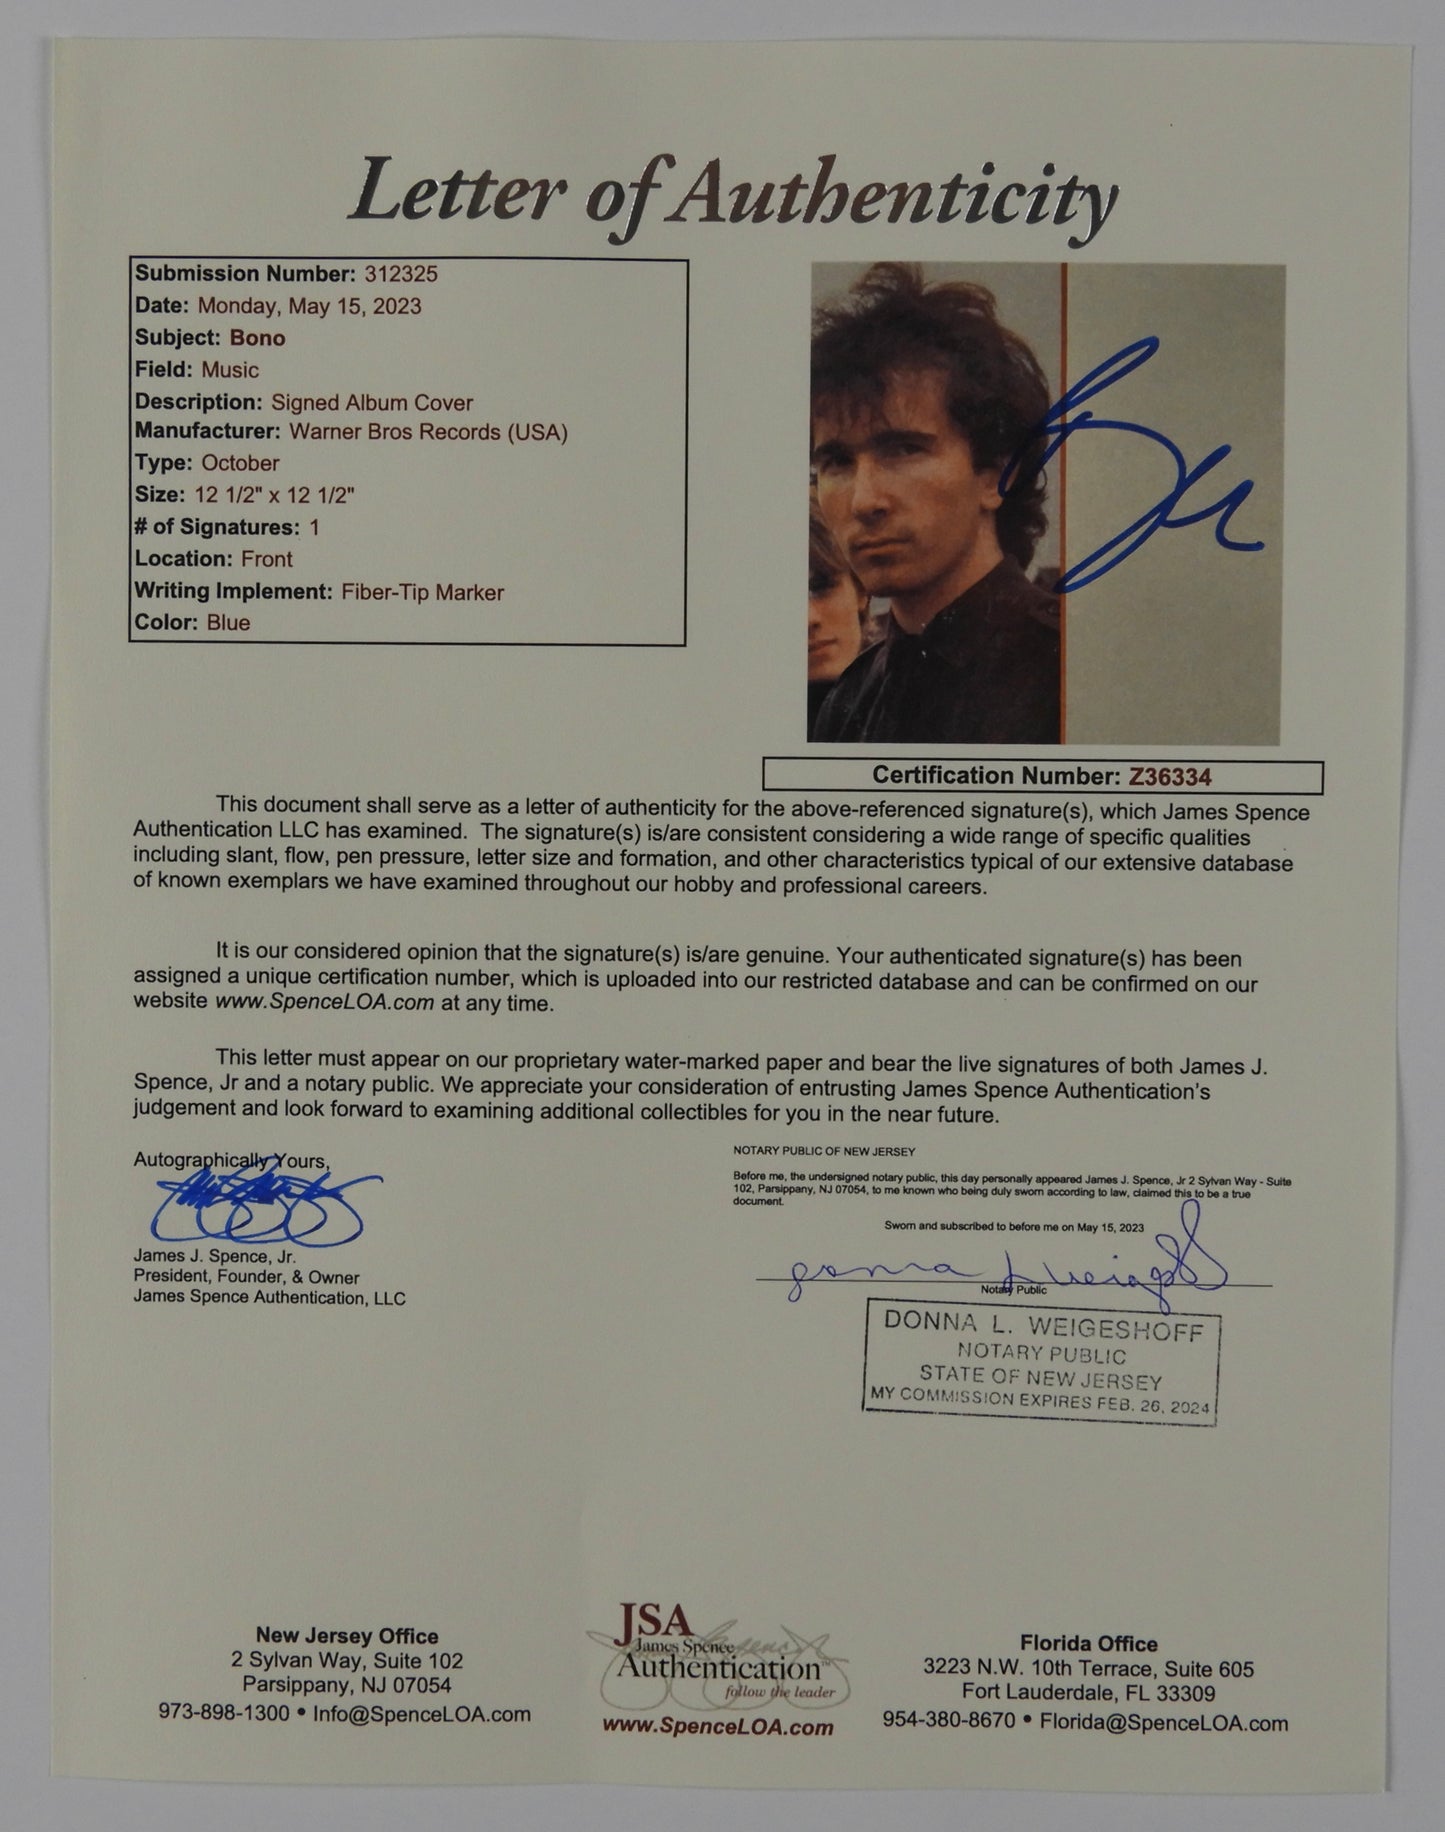 U2 Bono October JSA Signed Autograph Record Album LP